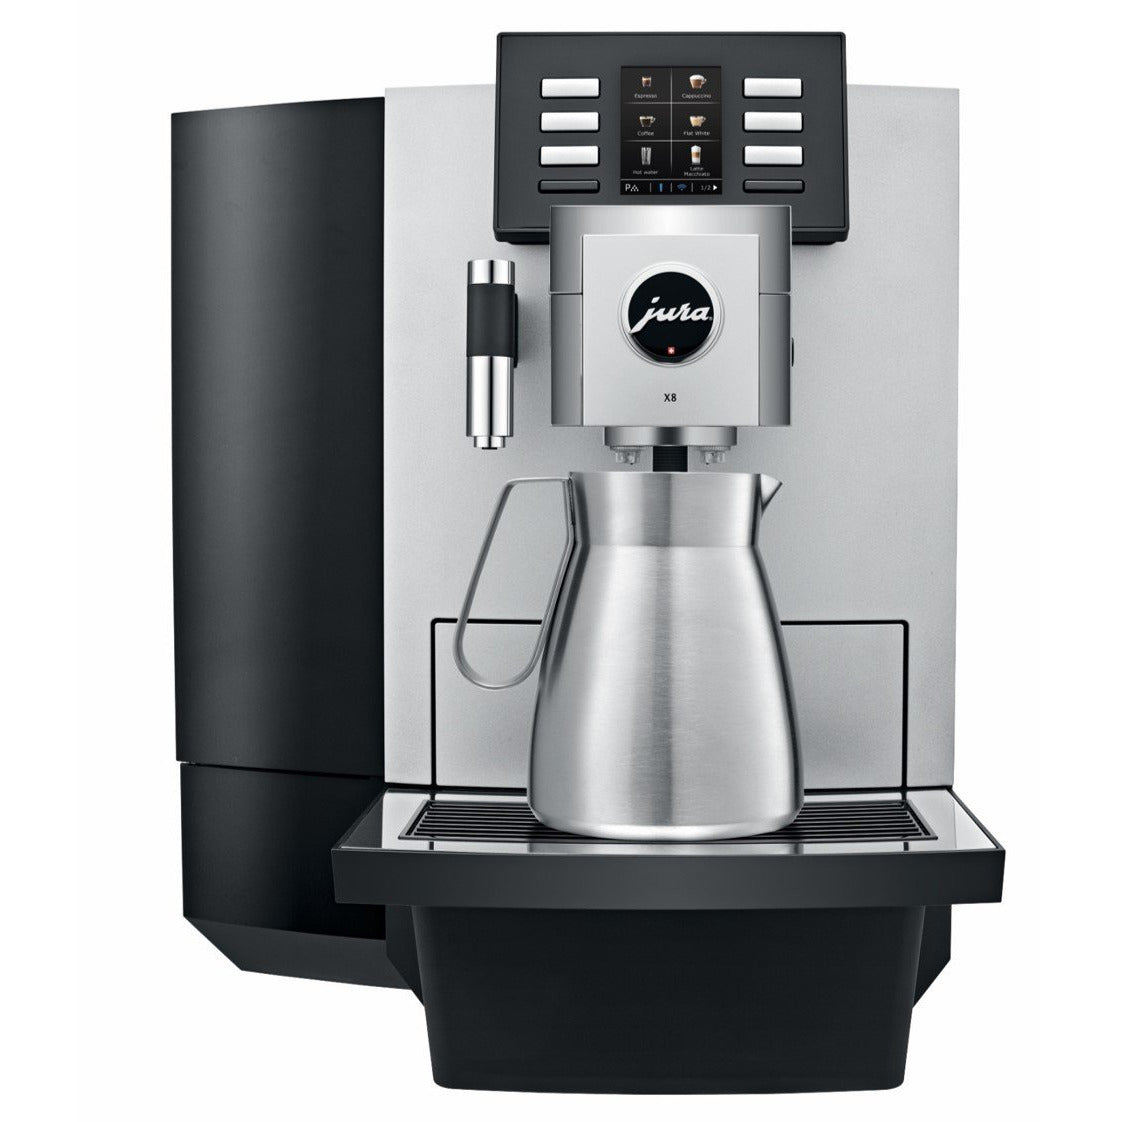 JURA X6 coffee machine Dark Inox, free ship Worldwide